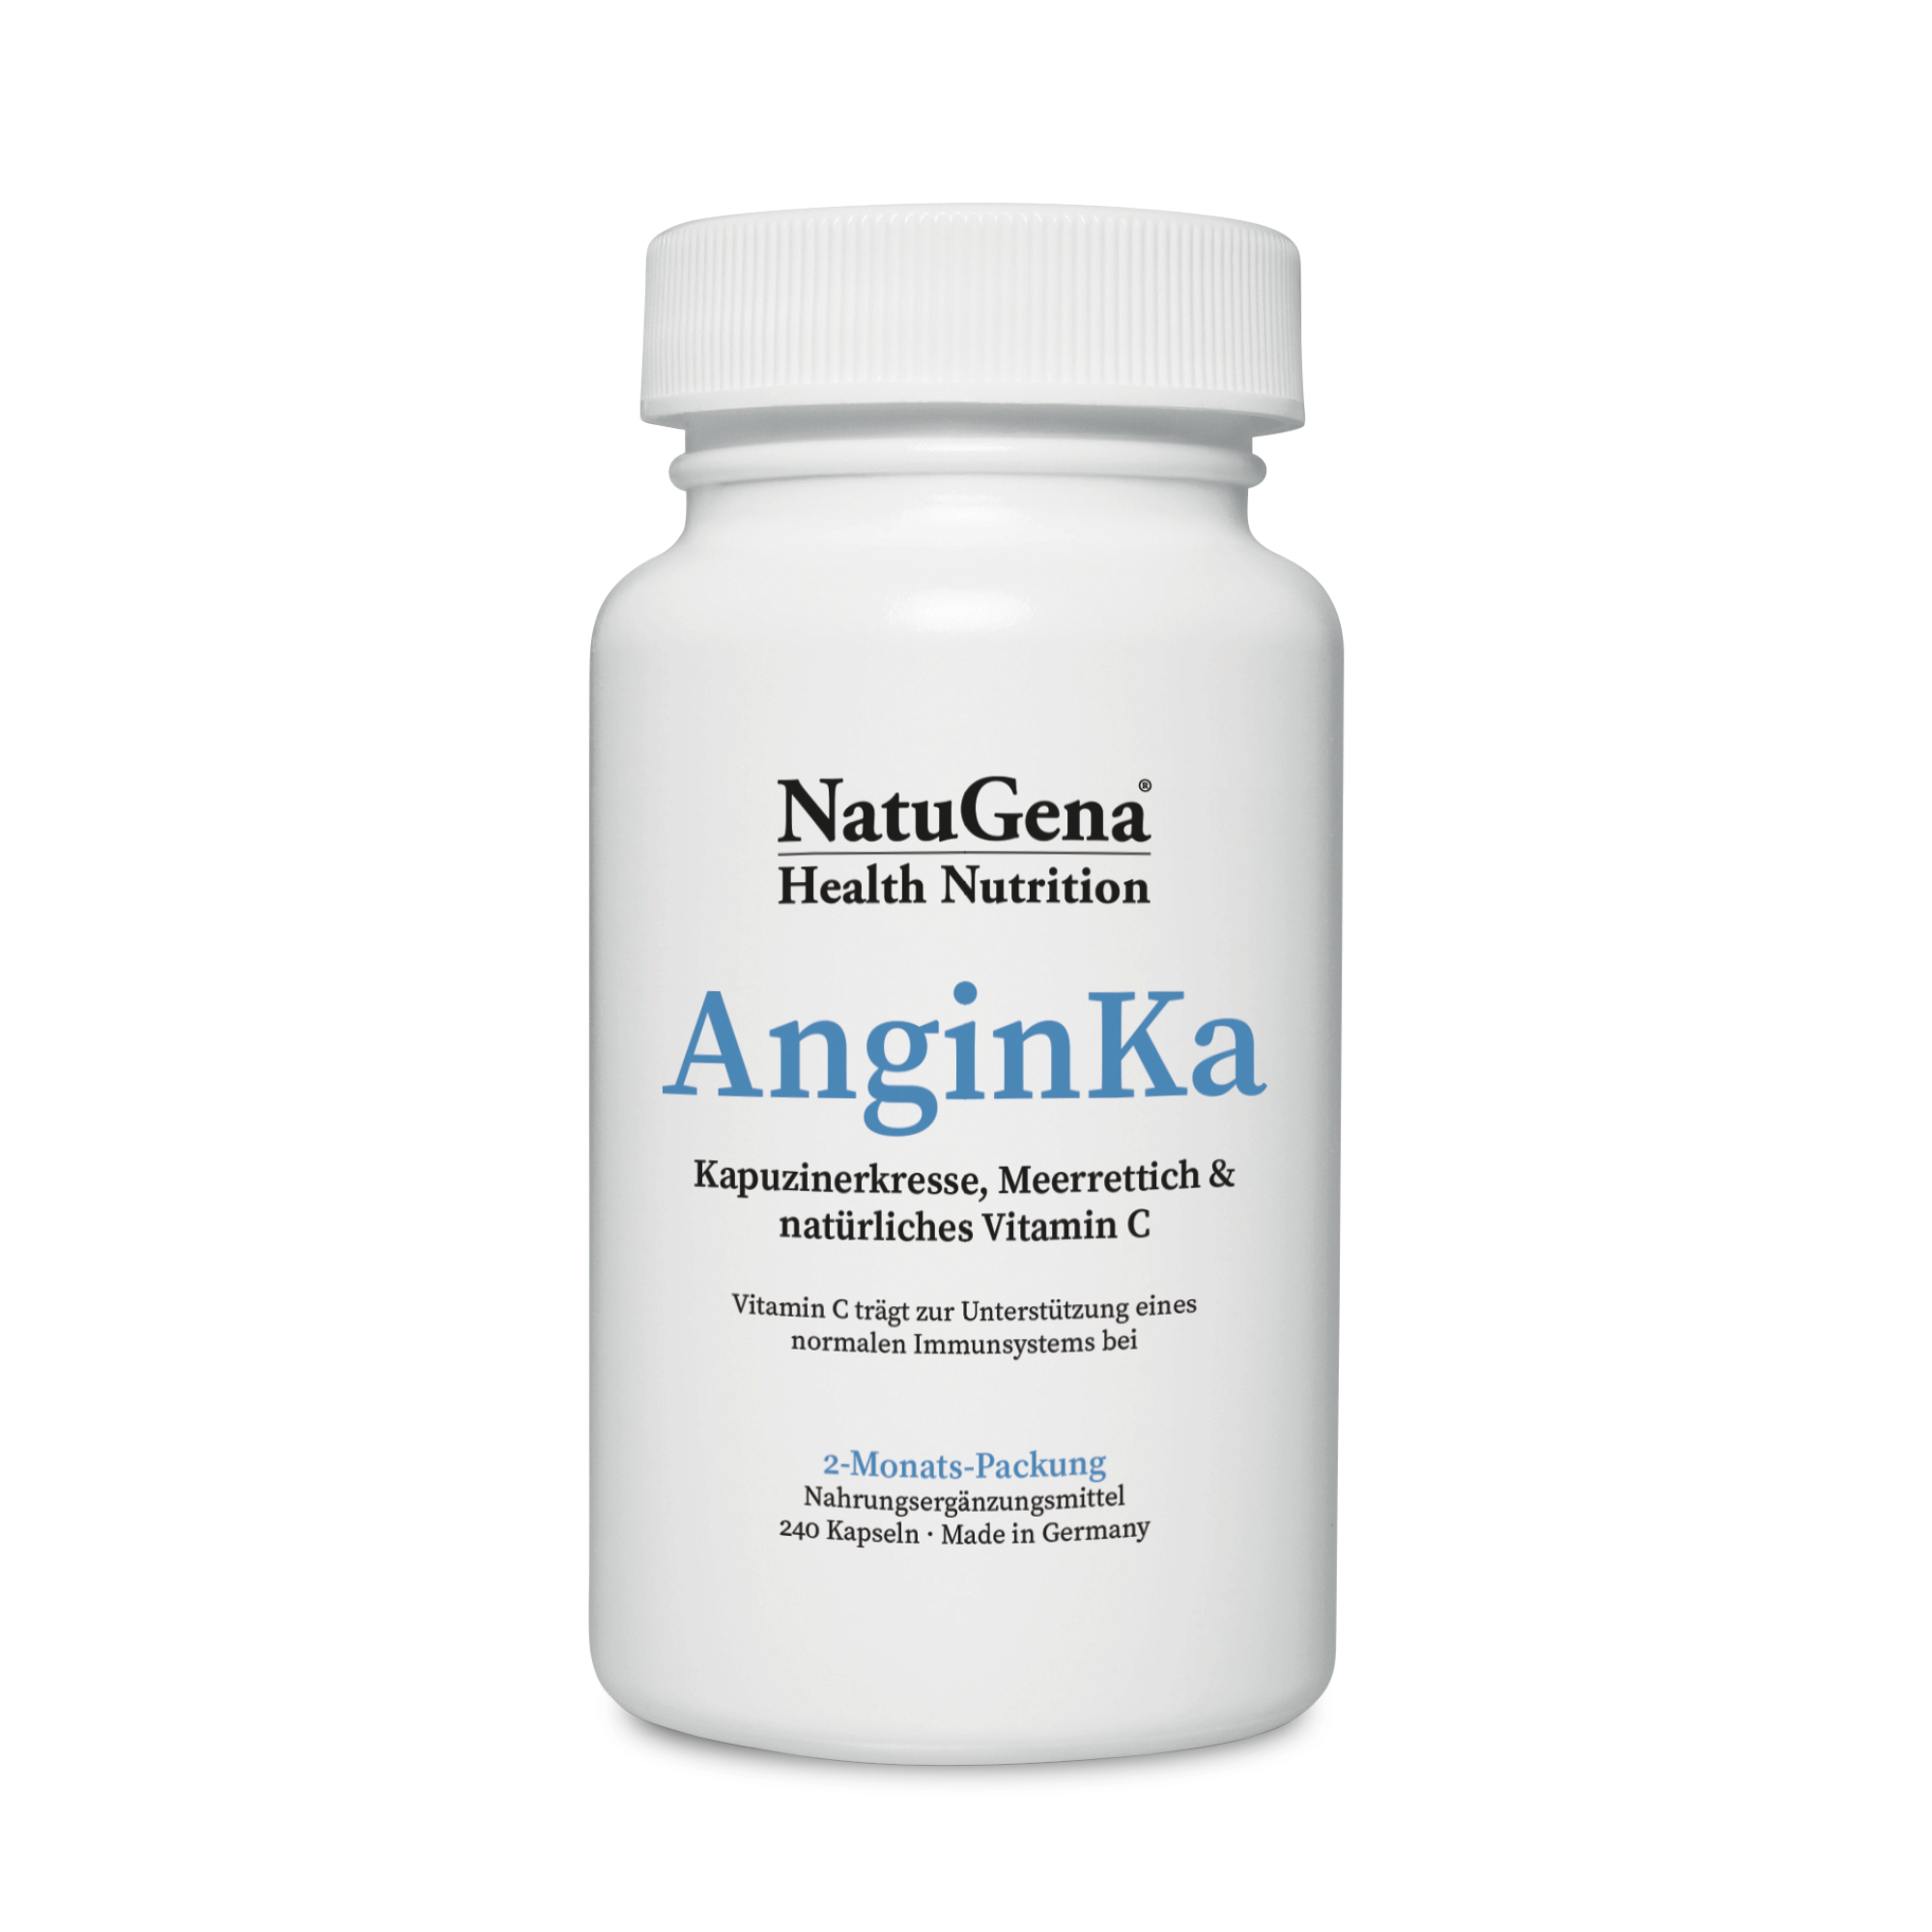 NatuGena AnginKa | 240 Kapseln - Pflanzliche Kraft für Immunsystem und Wohlbefinden